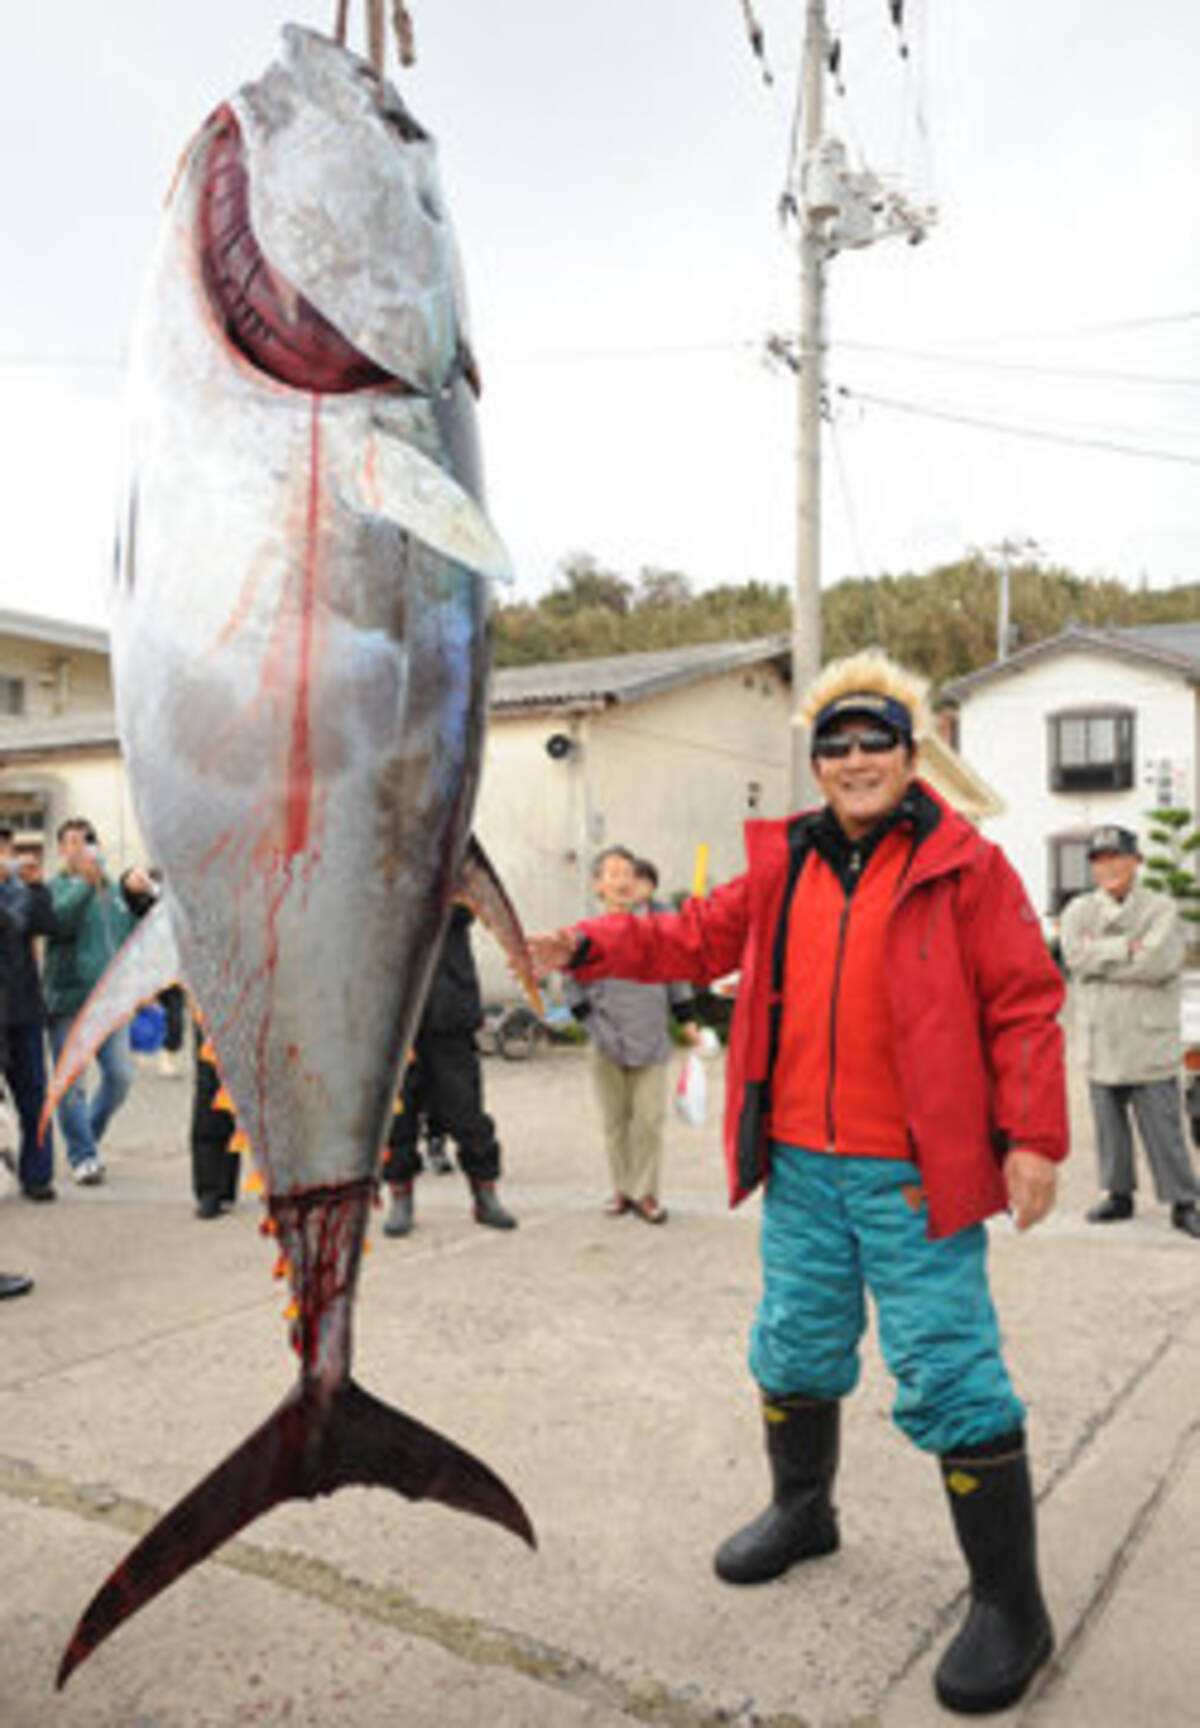 釣り好き 松方弘樹はマグロの乱獲規制を訴えていた 犯罪的な漁法の味方をする安倍ら自民党政治家を批判 17年1月26日 エキサイトニュース